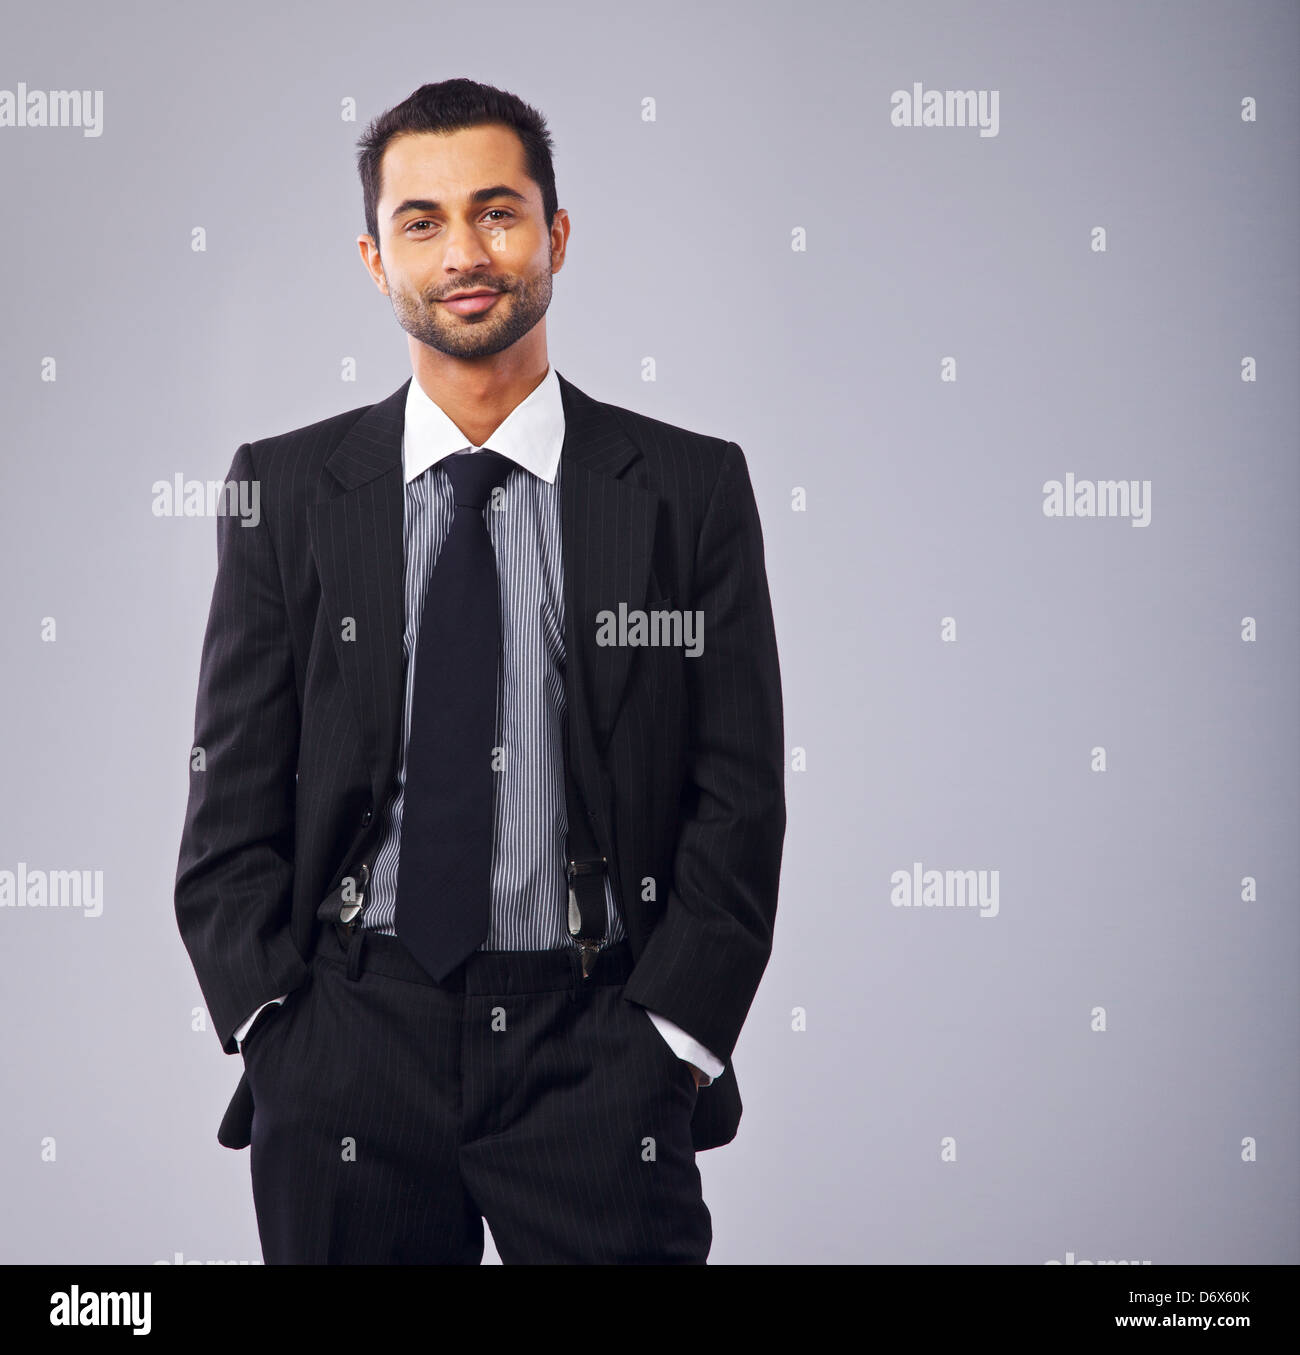 Ritratto di un giovane dirigente in business suit Foto Stock